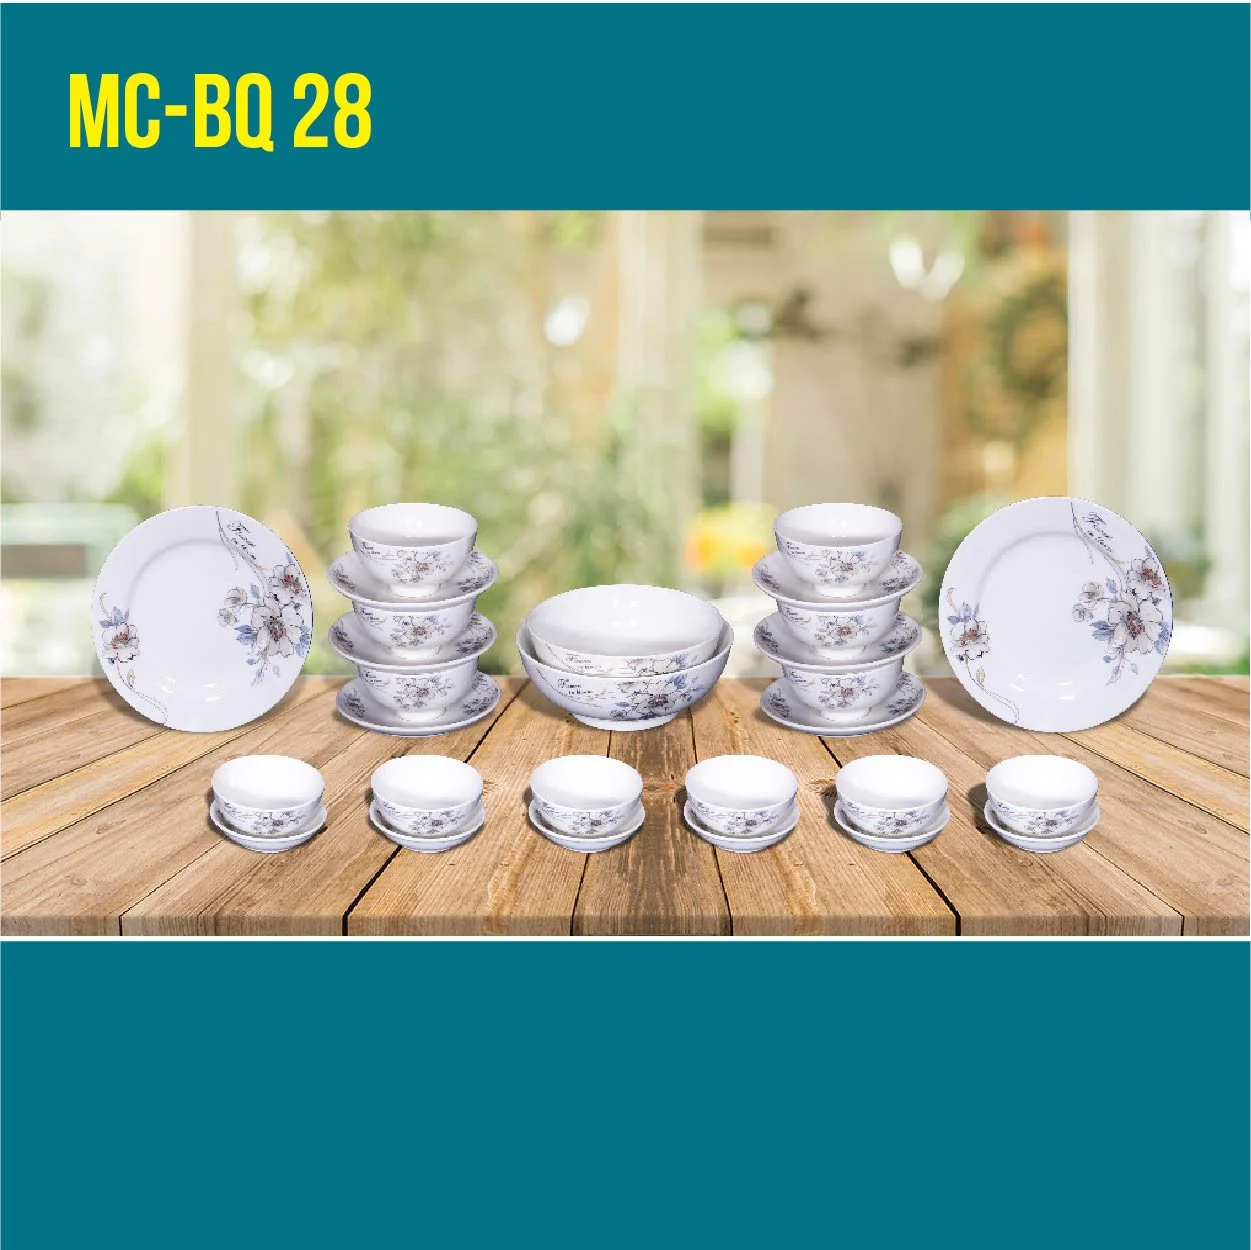 MC-BQ 28-03 Bộ quà tặng 28 sản phẩm sứ xương cao cấp Minh Châu Hảo Cảnh